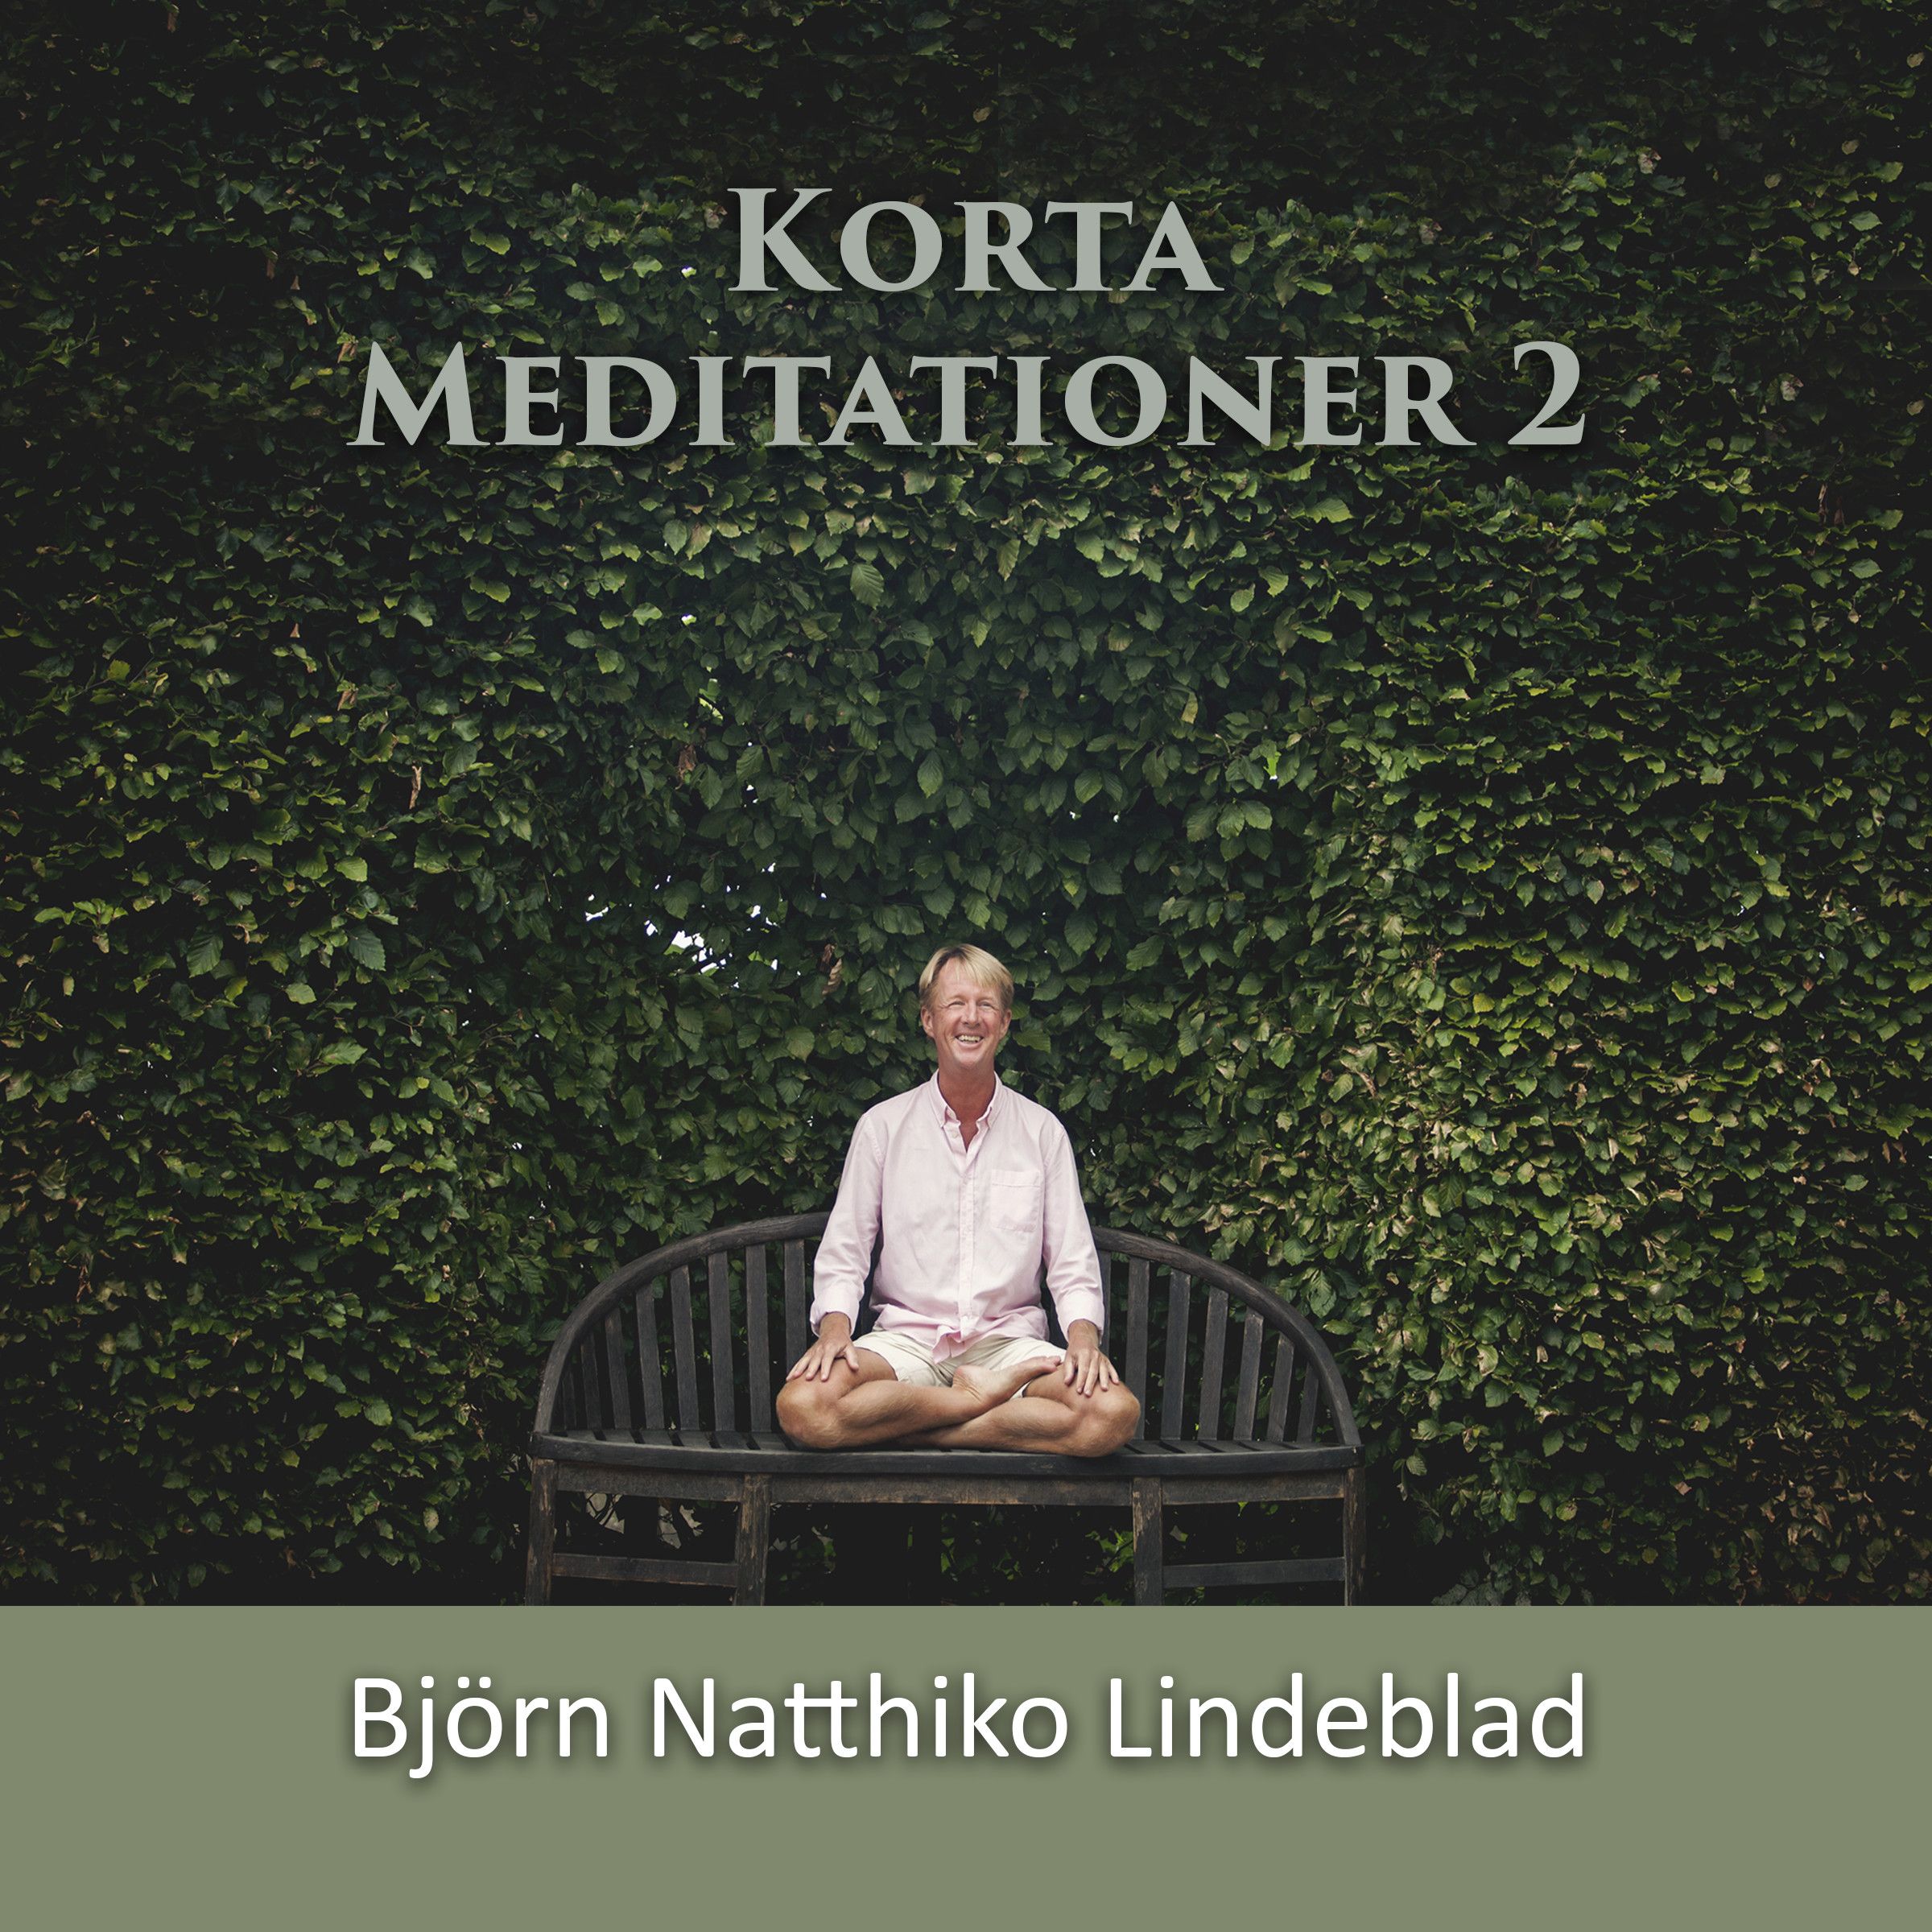 Korta Meditationer 2, ljudbok av Björn Natthiko Lindeblad